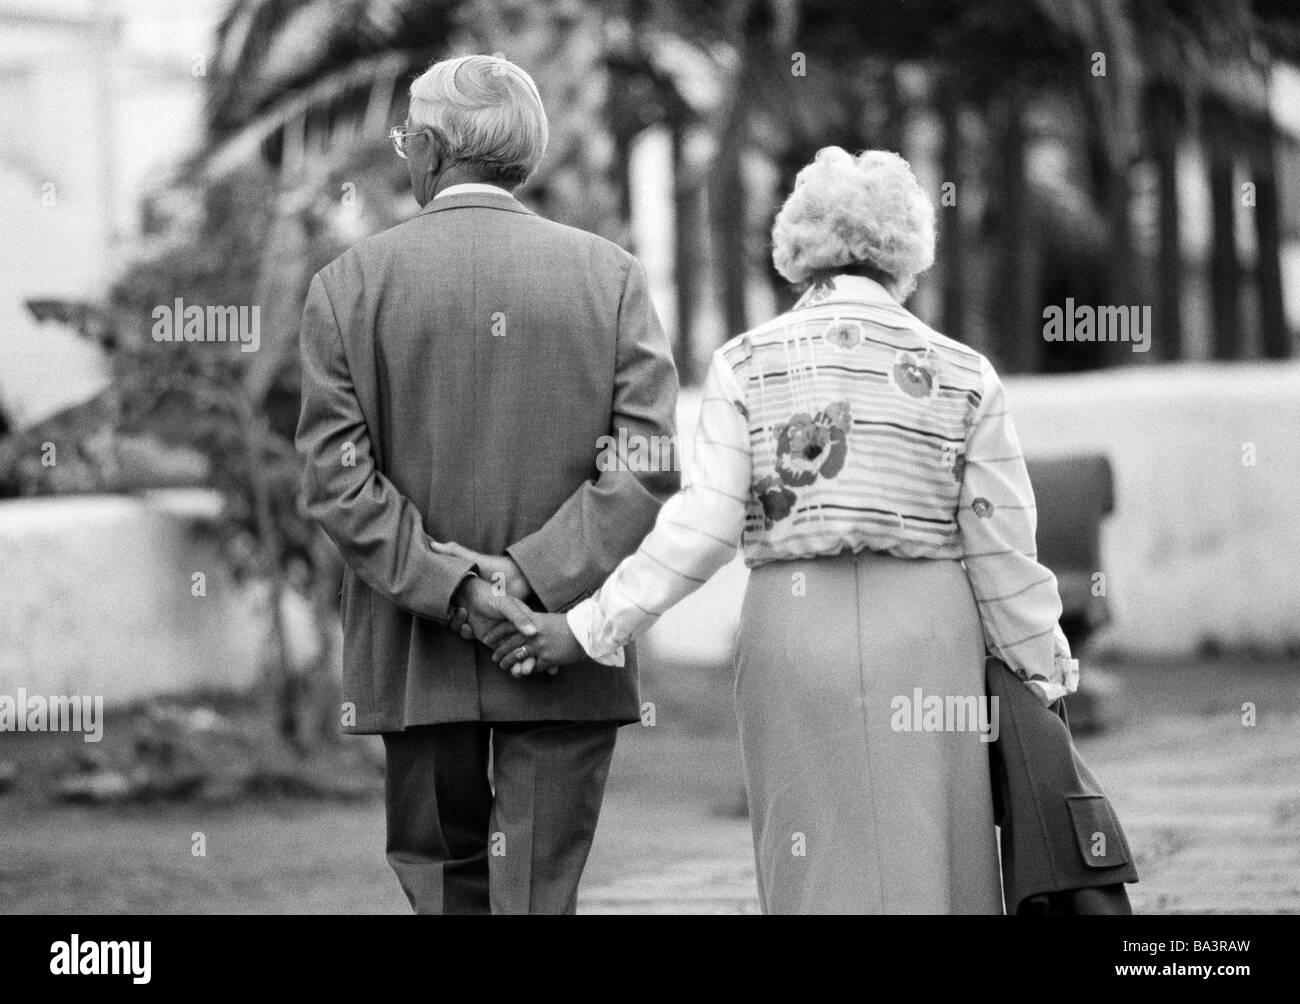 Années 1980, photo en noir et blanc, les gens, les personnes âgées, vieux couple marche main dans la main, se tenant la main, poursuite, blouse, jupe, âgés de 65 à 75 ans, l'Espagne, Îles Canaries, Puerto de la Cruz Banque D'Images